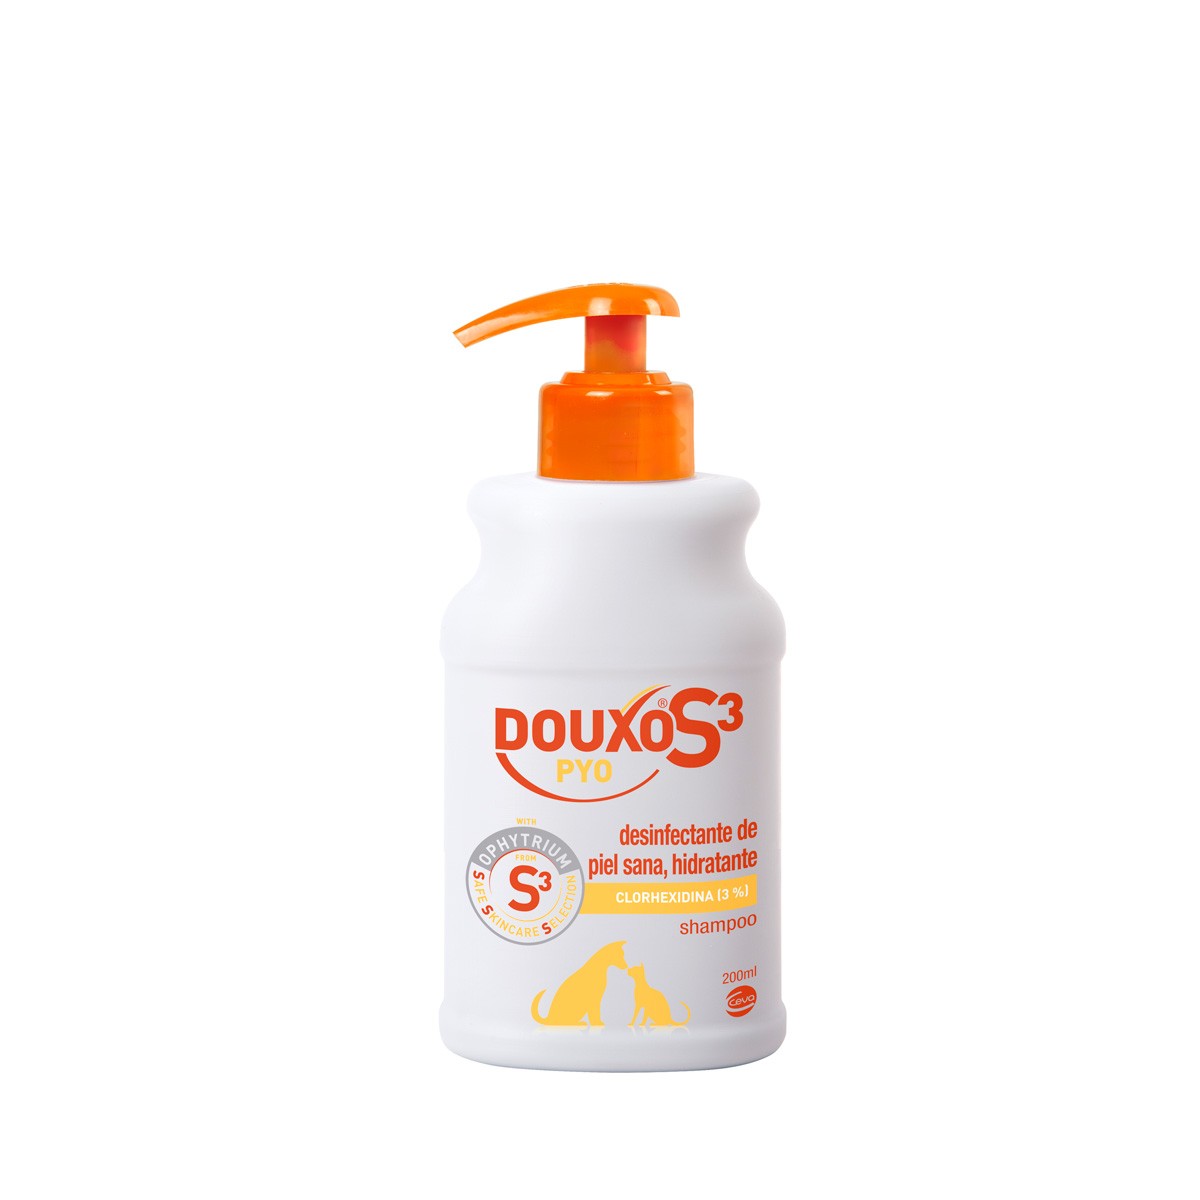 Ceva douxo s3 pyo shampoo 200ml